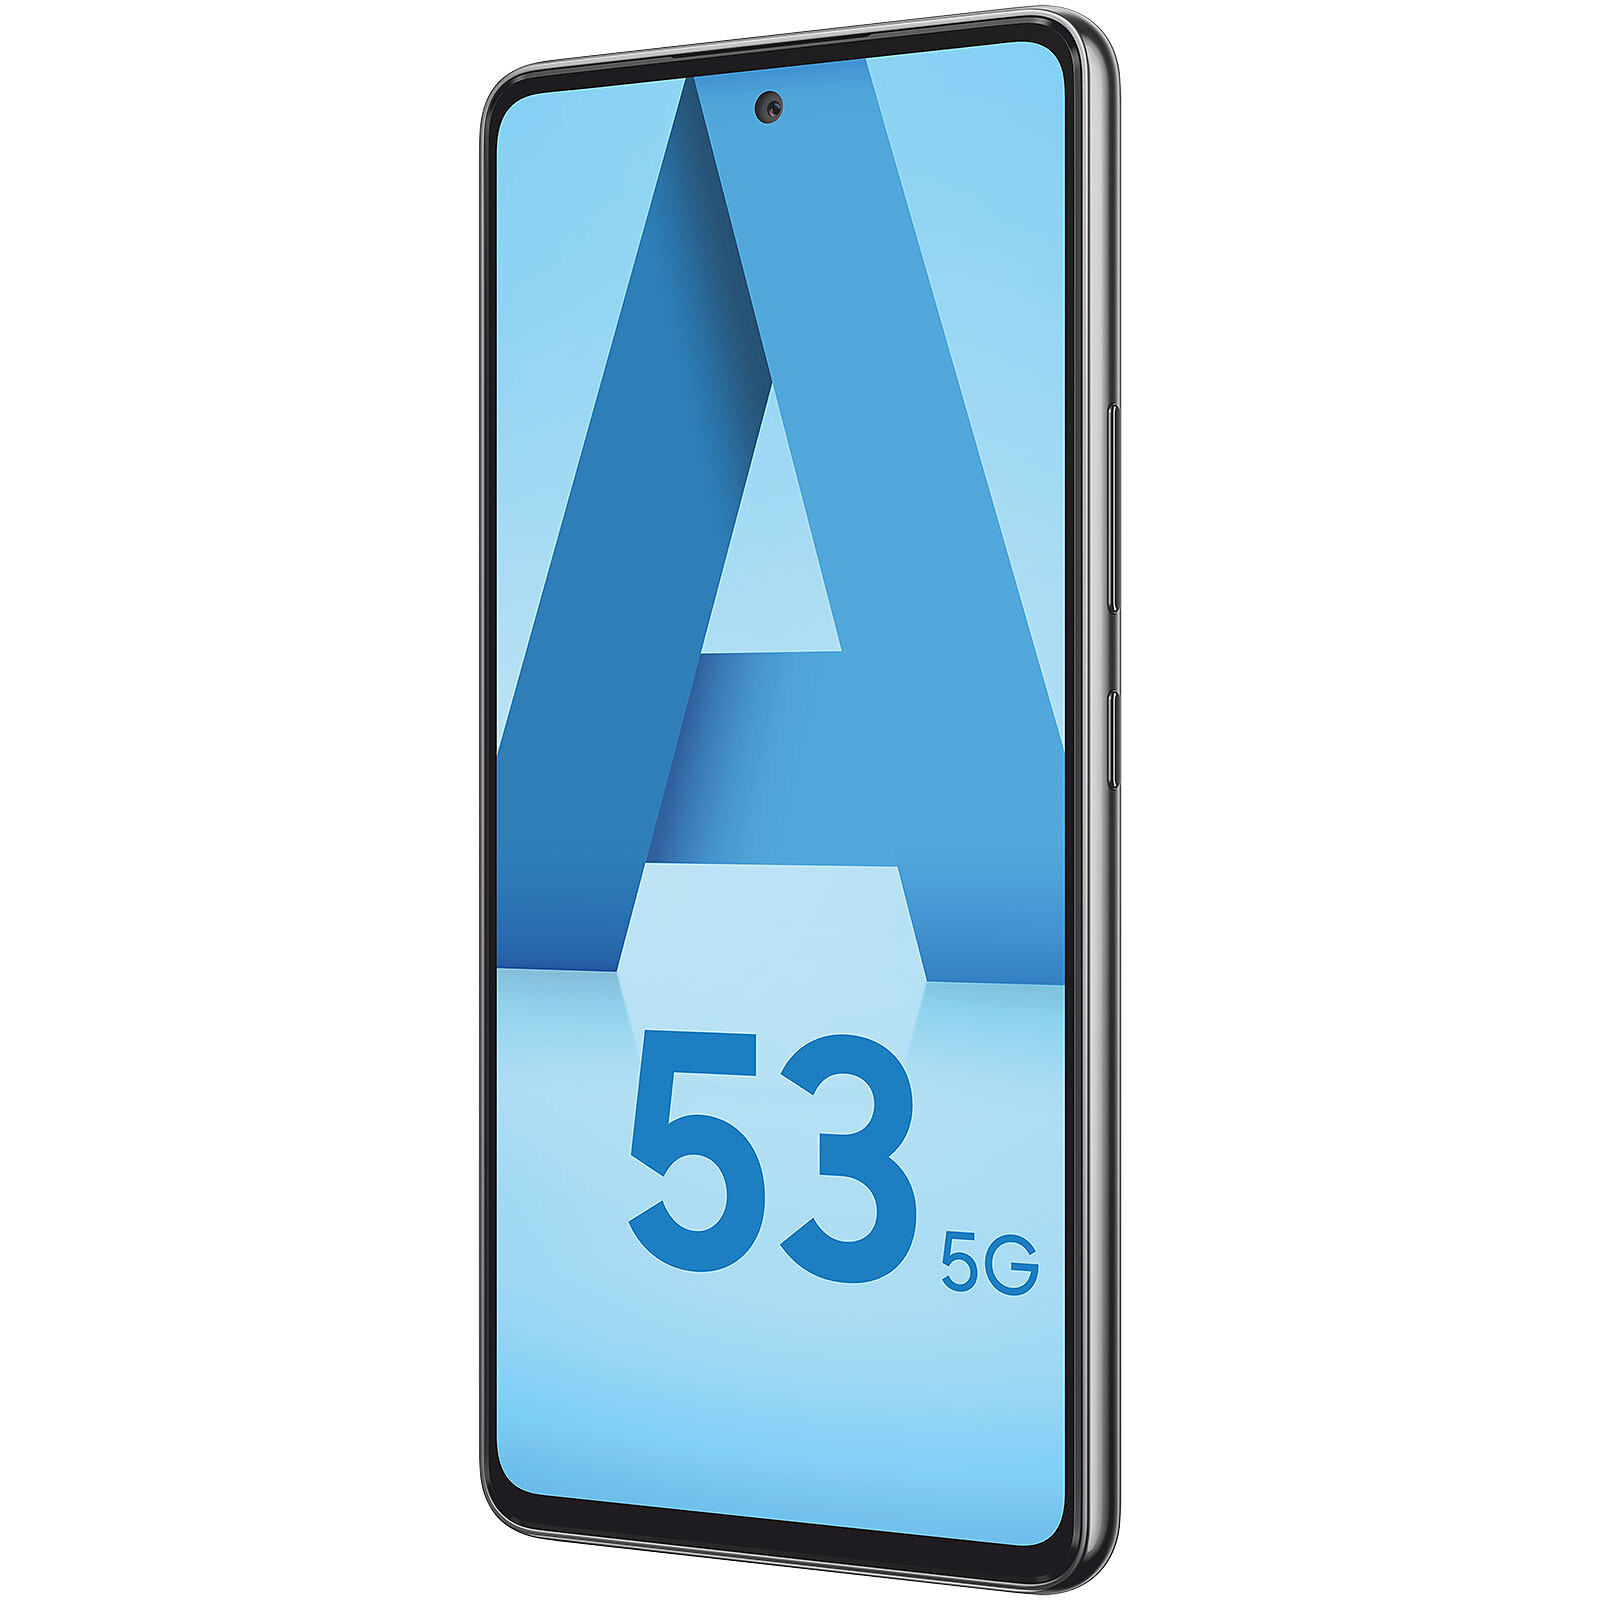 53 256. Samsung Galaxy a53 5g. Galaxy a33 5g. Смартфон Samsung Galaxy a53 5g 128gb. Galaxy a53 5g 256gb.